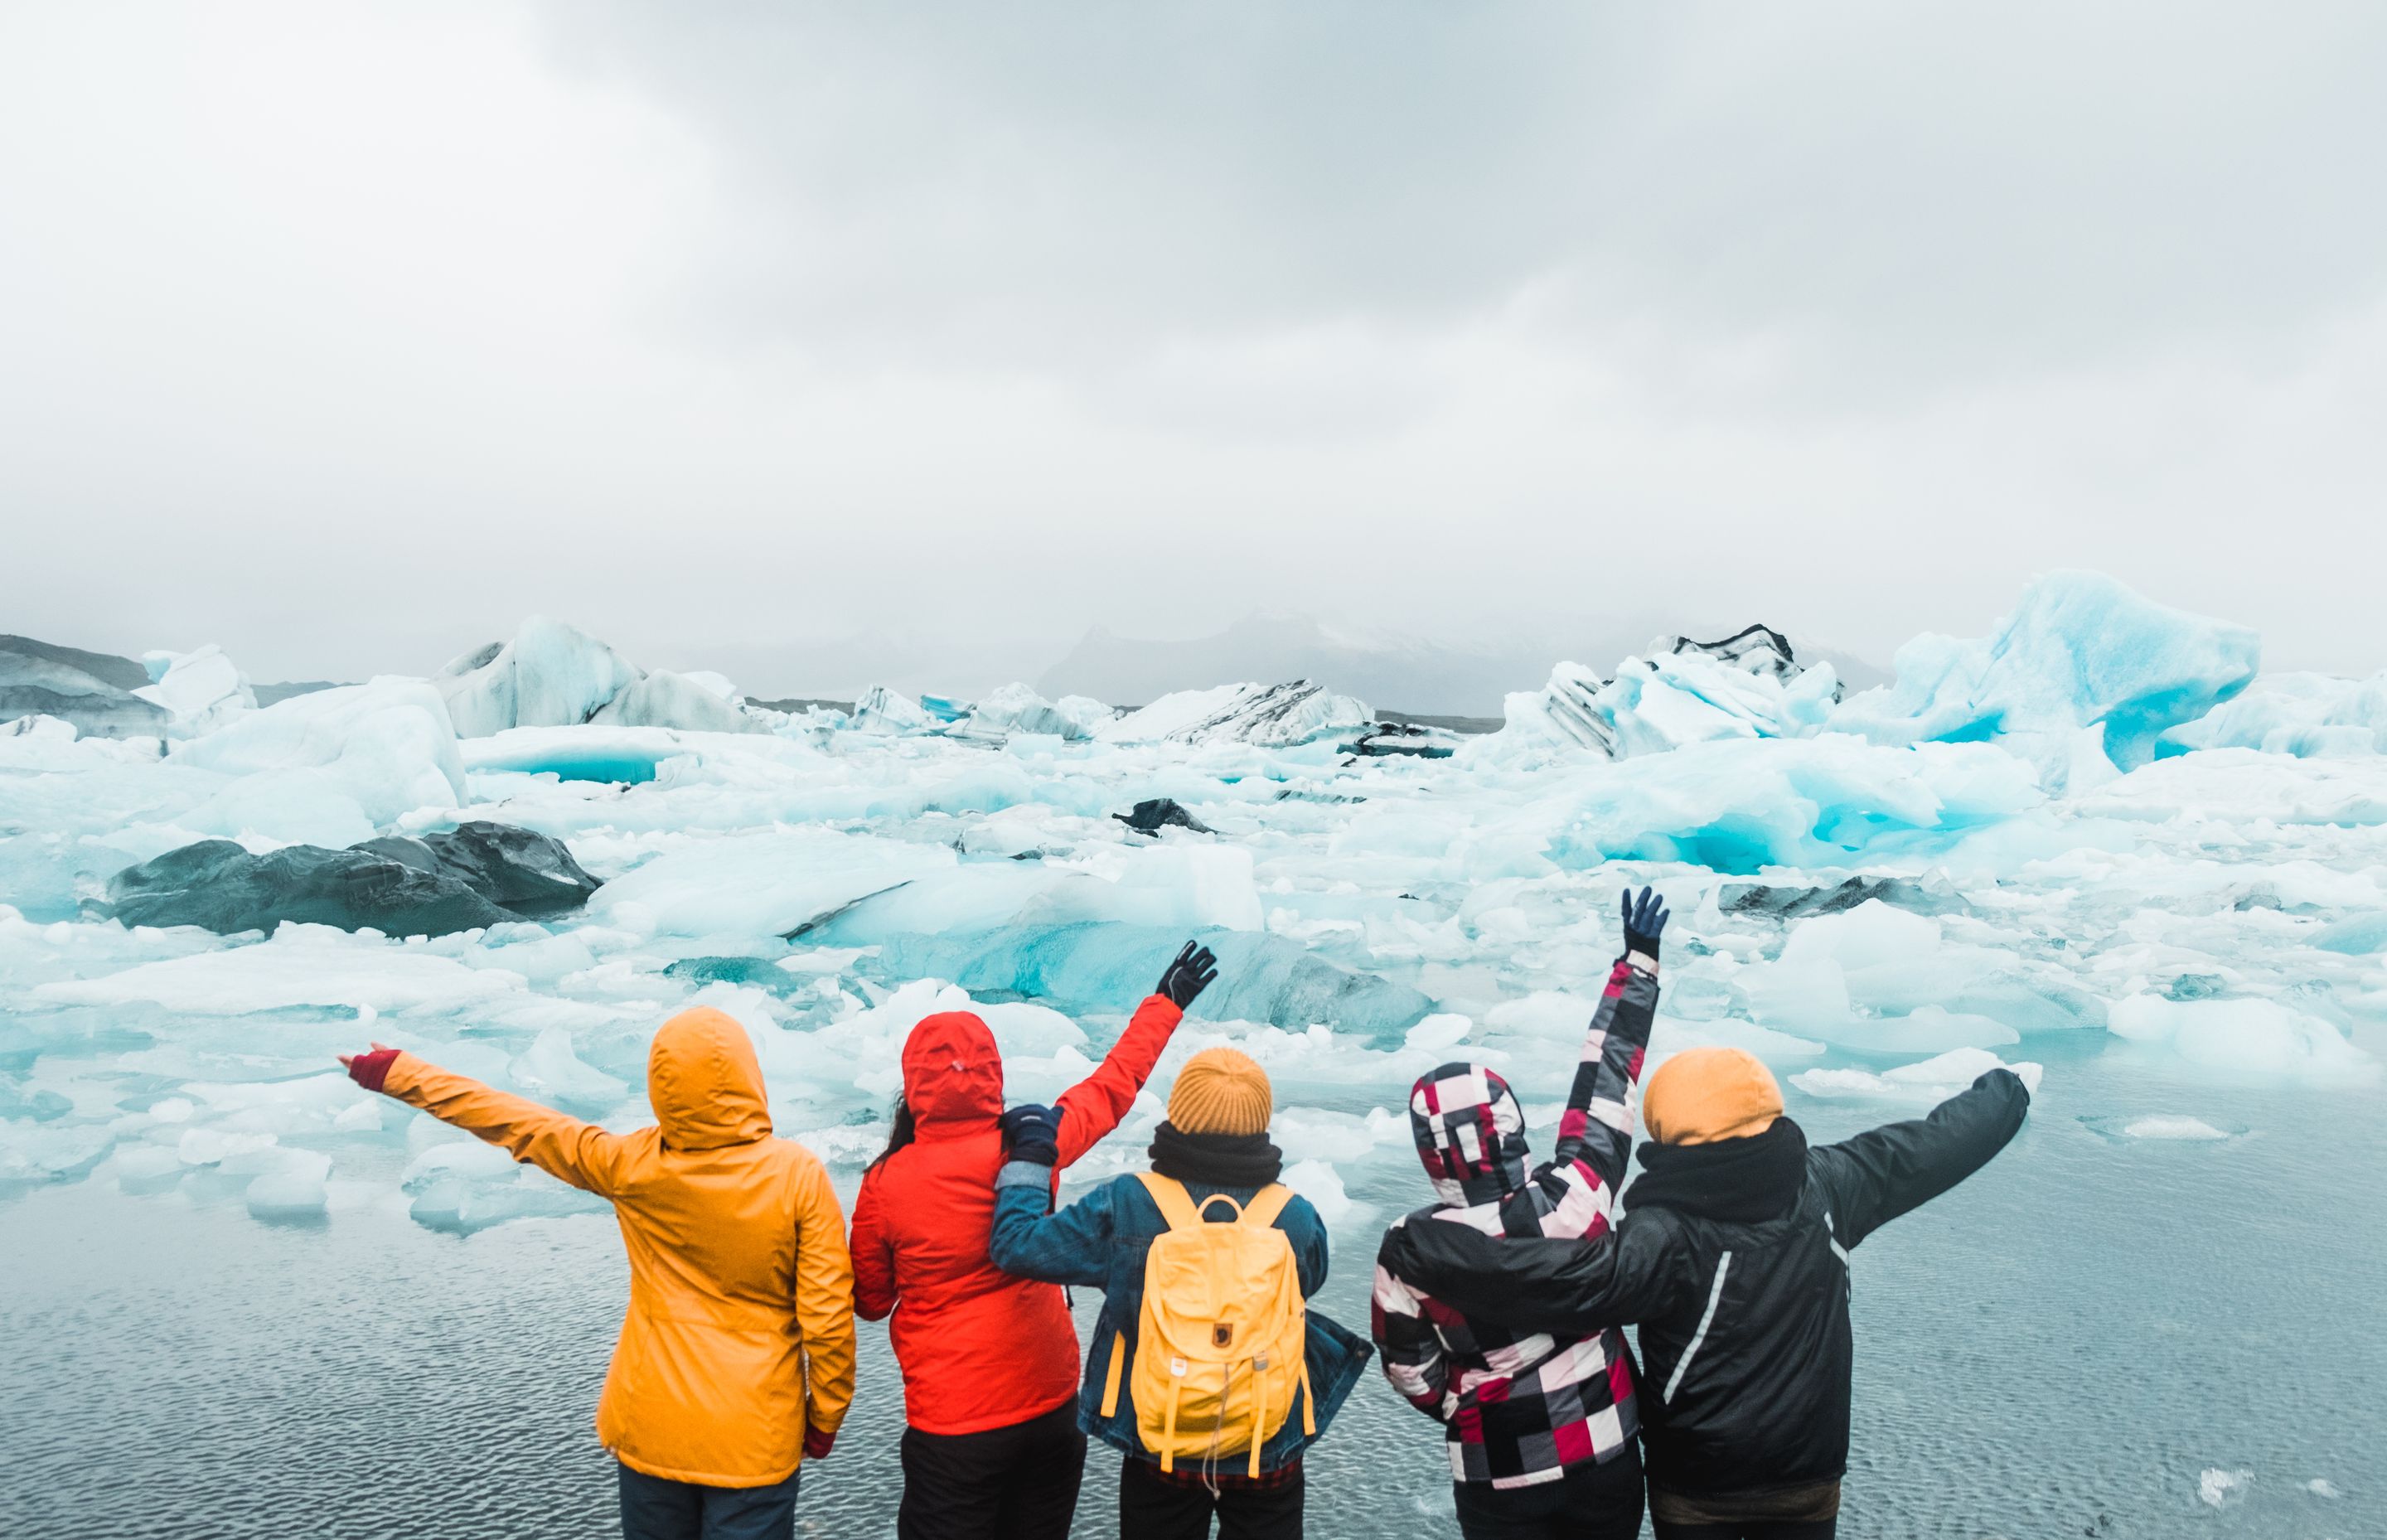 5 friends having fun standing near water in Iceland